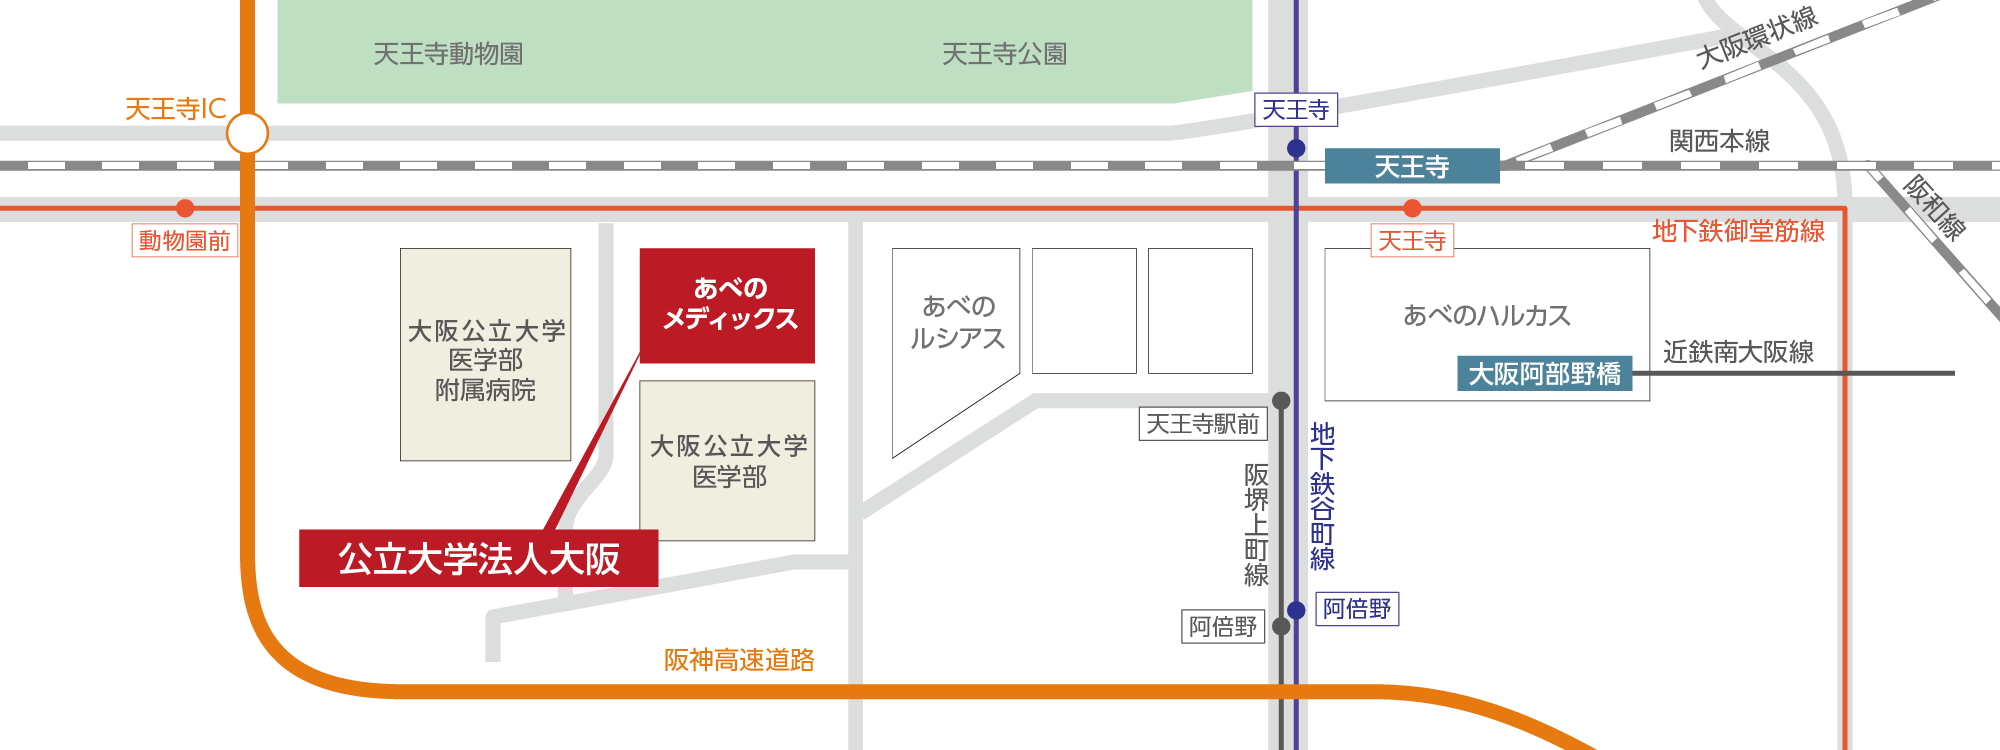 公立大学法人大阪 交通アクセスマップ